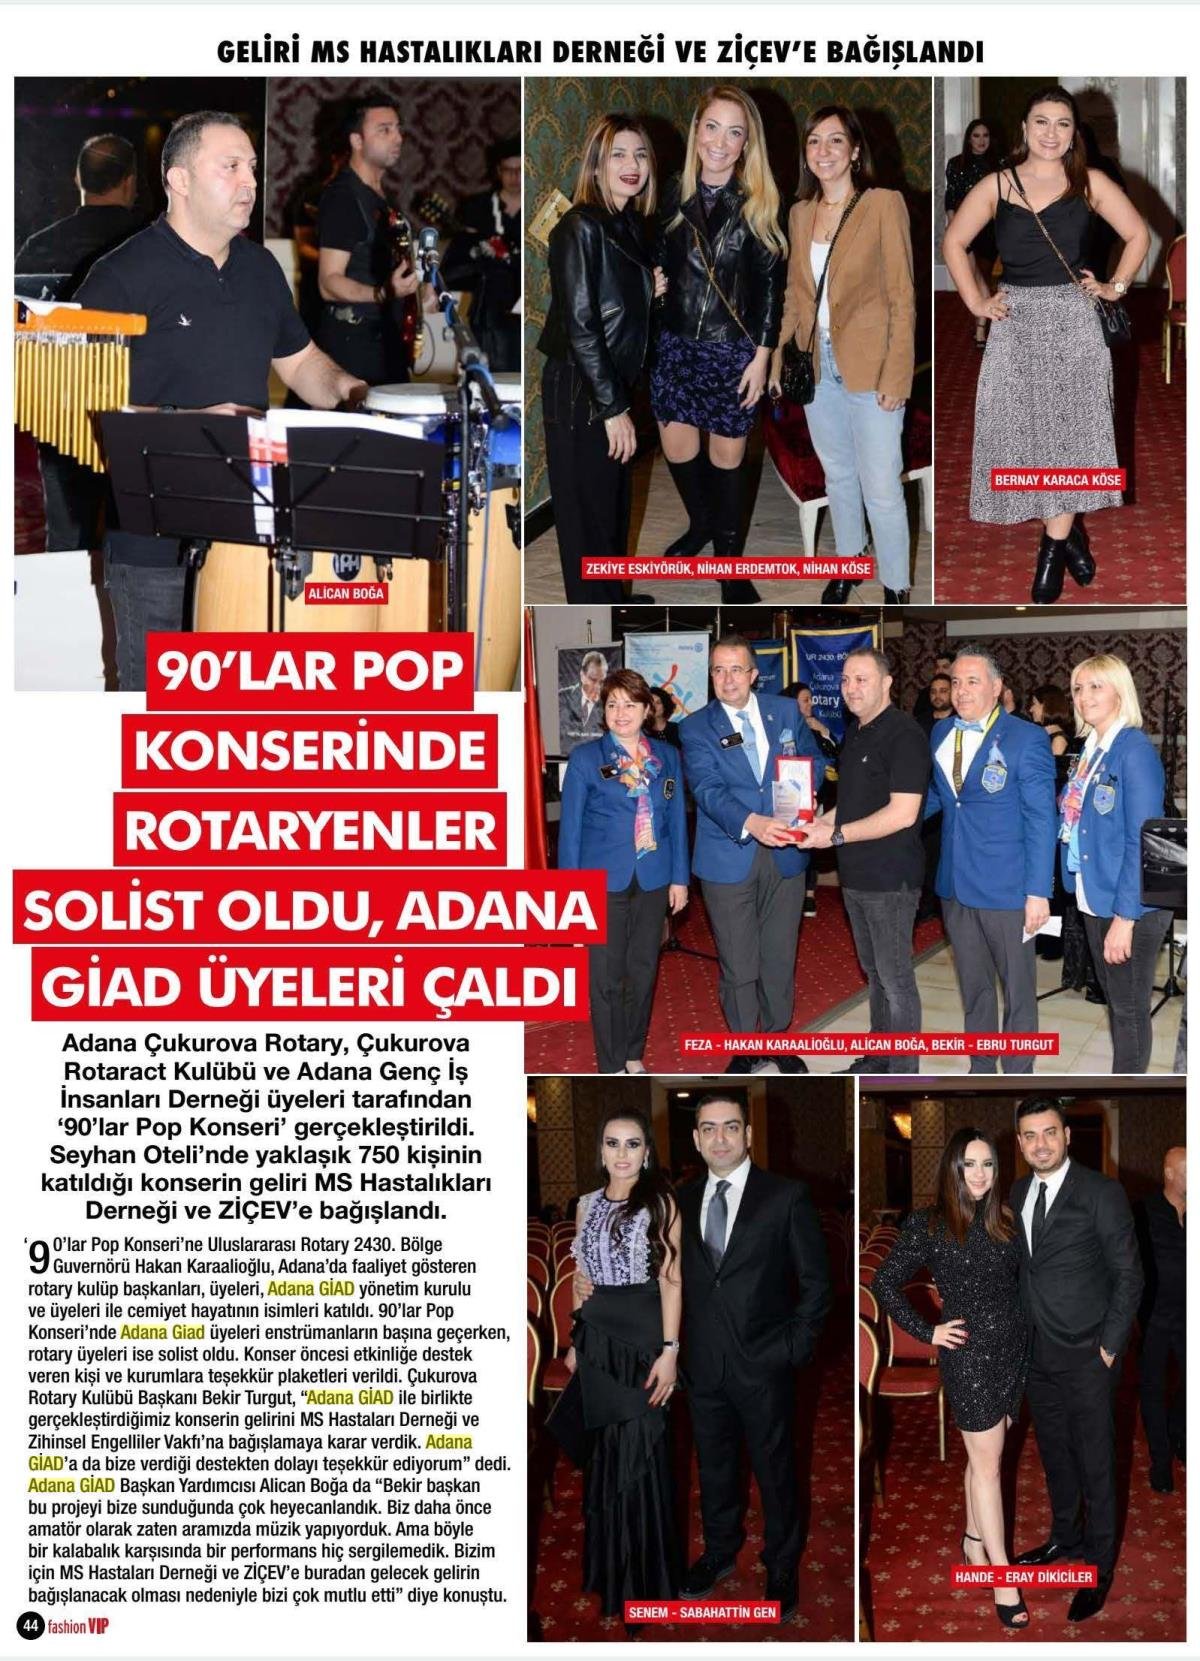 FASHION VIP - 90'LAR POP KONSERİNDE ROTARYENLER SOLİST OLDU ADANAGİAD ÜYELERİ ÇALDI